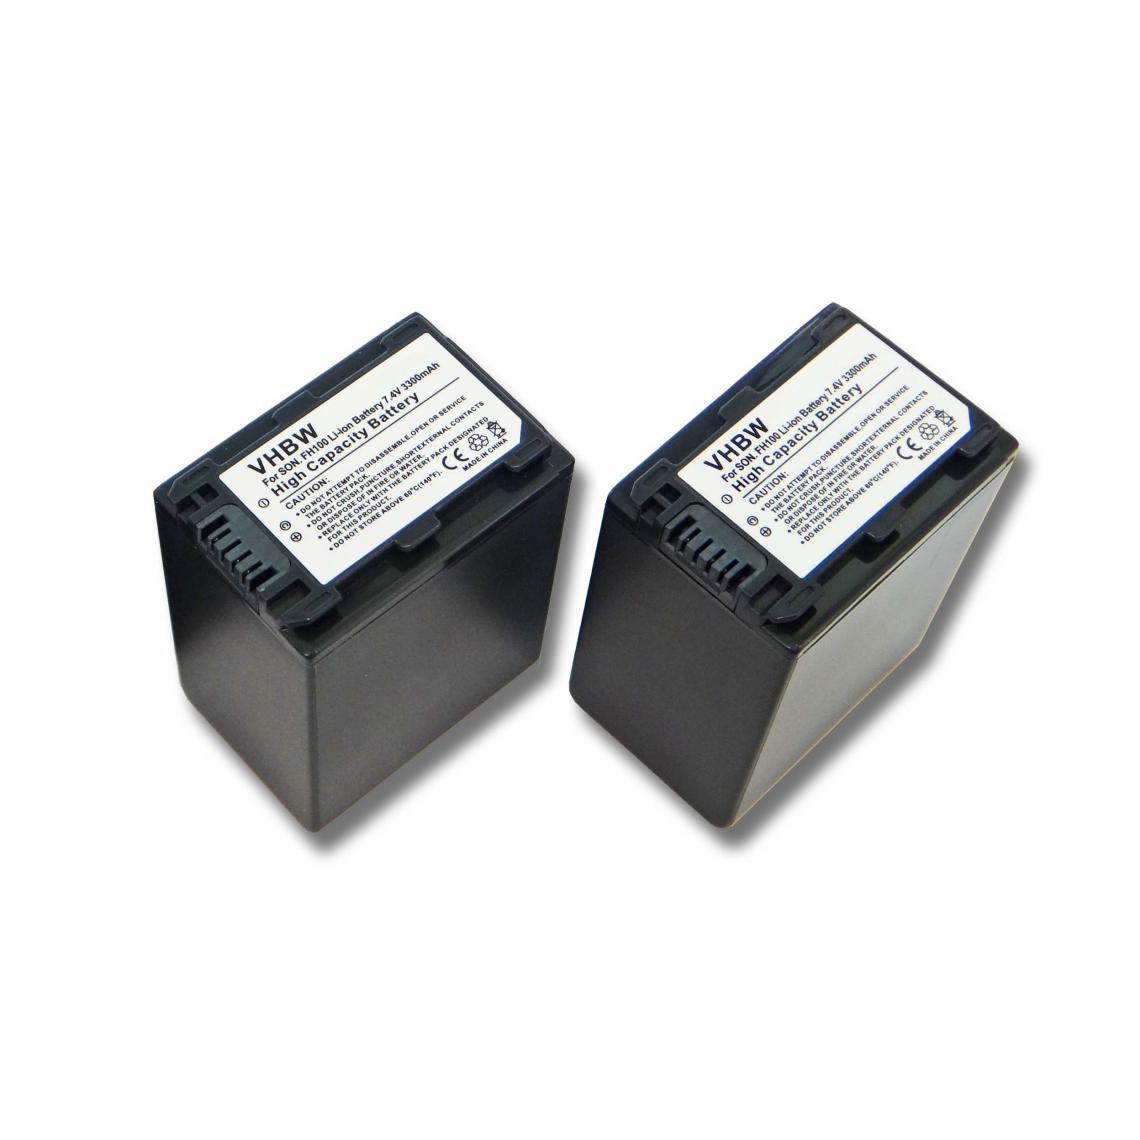 Vhbw - vhbw 2x batterie compatible avec Sony HDR-UX19E, HDR-UX3(E), HDR-UX7(E), HDR-UX9, HDR-UX9E caméra vidéo (3300mAh, 7,4V) avec puce d'information - Batterie Photo & Video